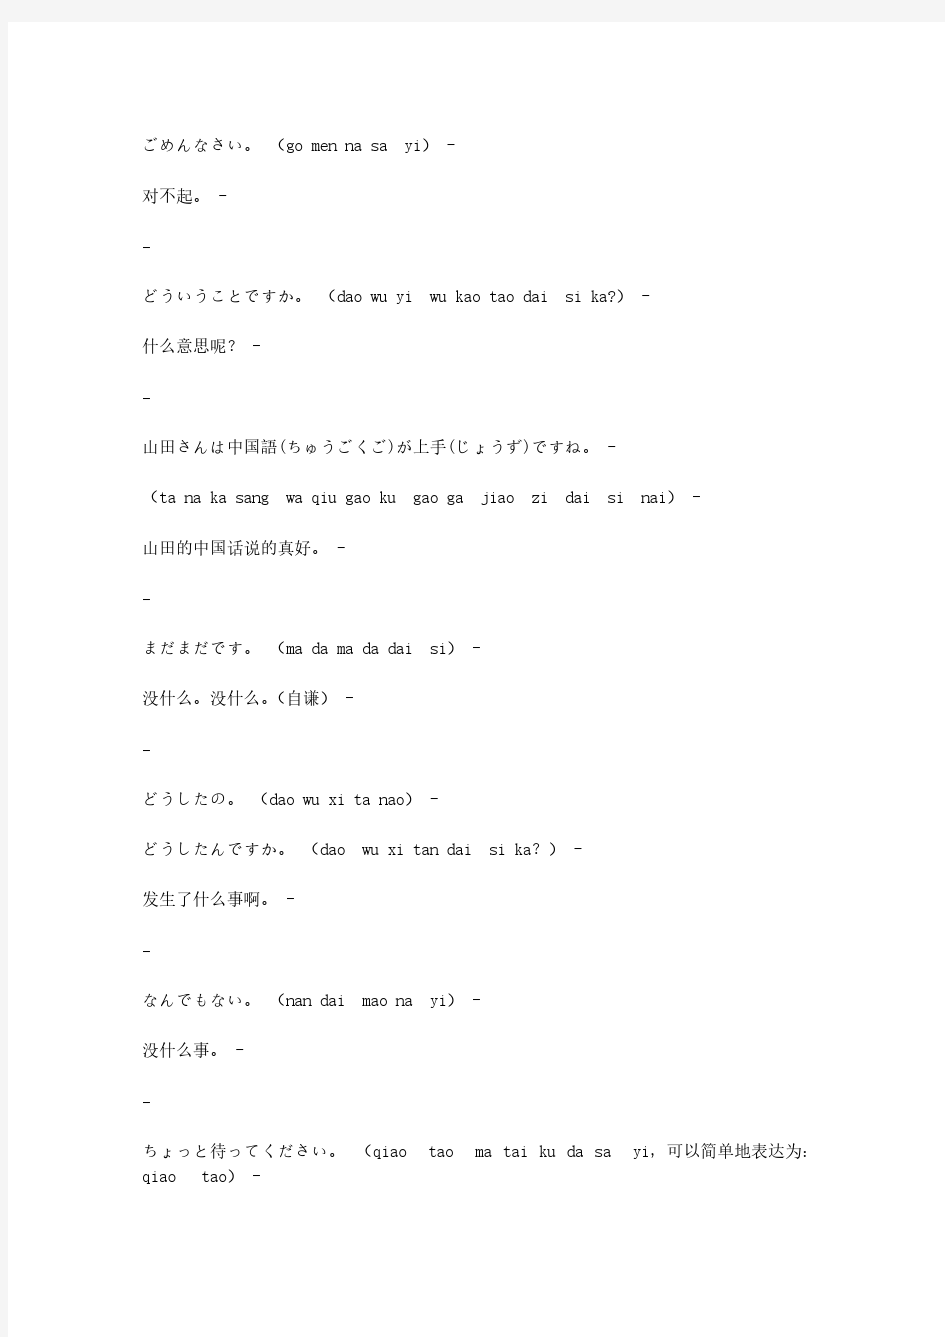 【免费下载】初级日语100句括号里为汉语拼音发音